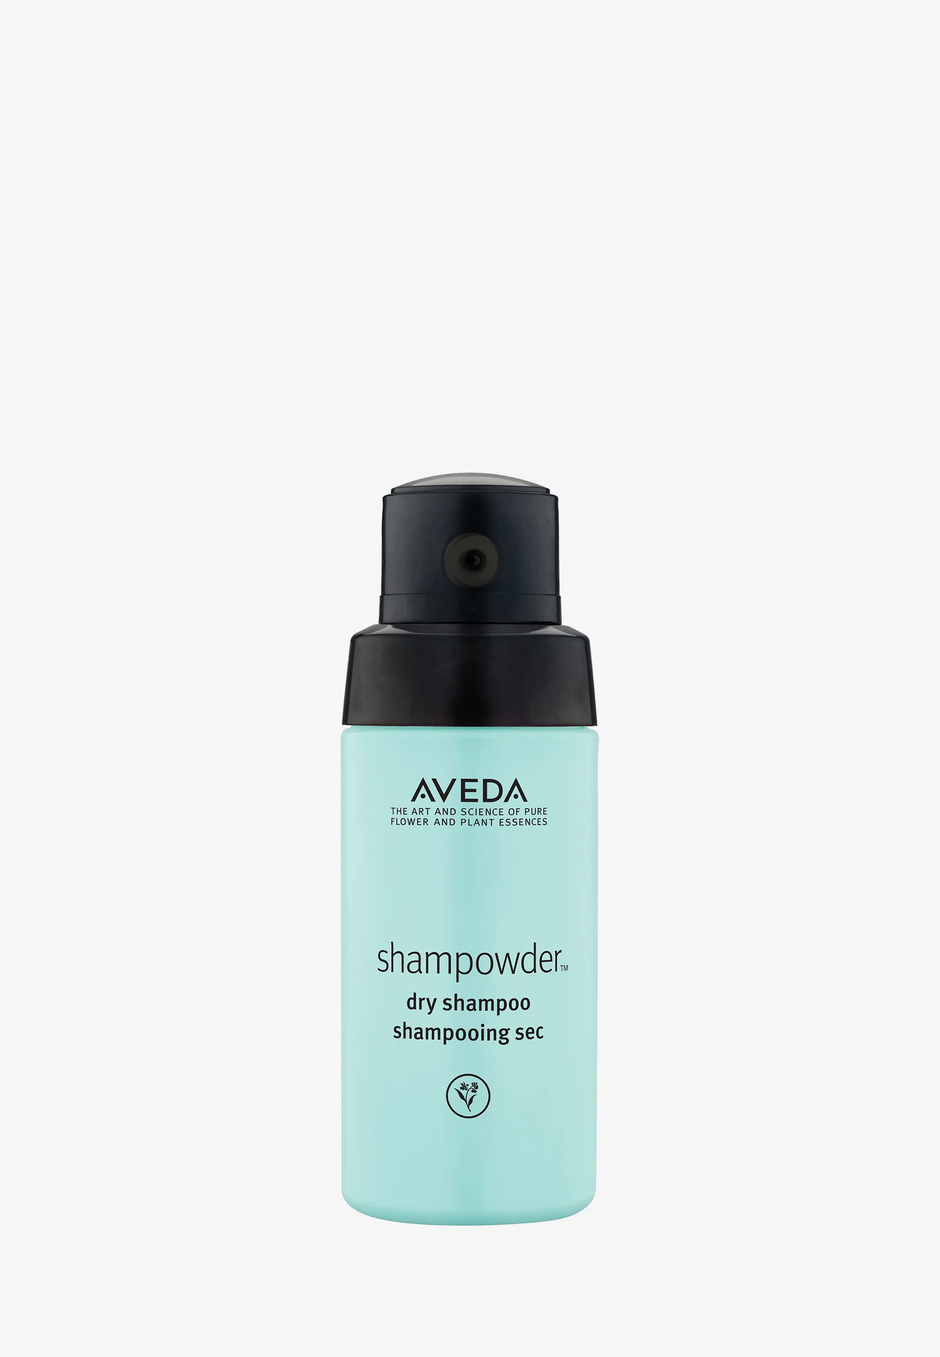 Foto: Pr, Aveda, šampon za kosu u prahu (24,99 eura) | Autor: 